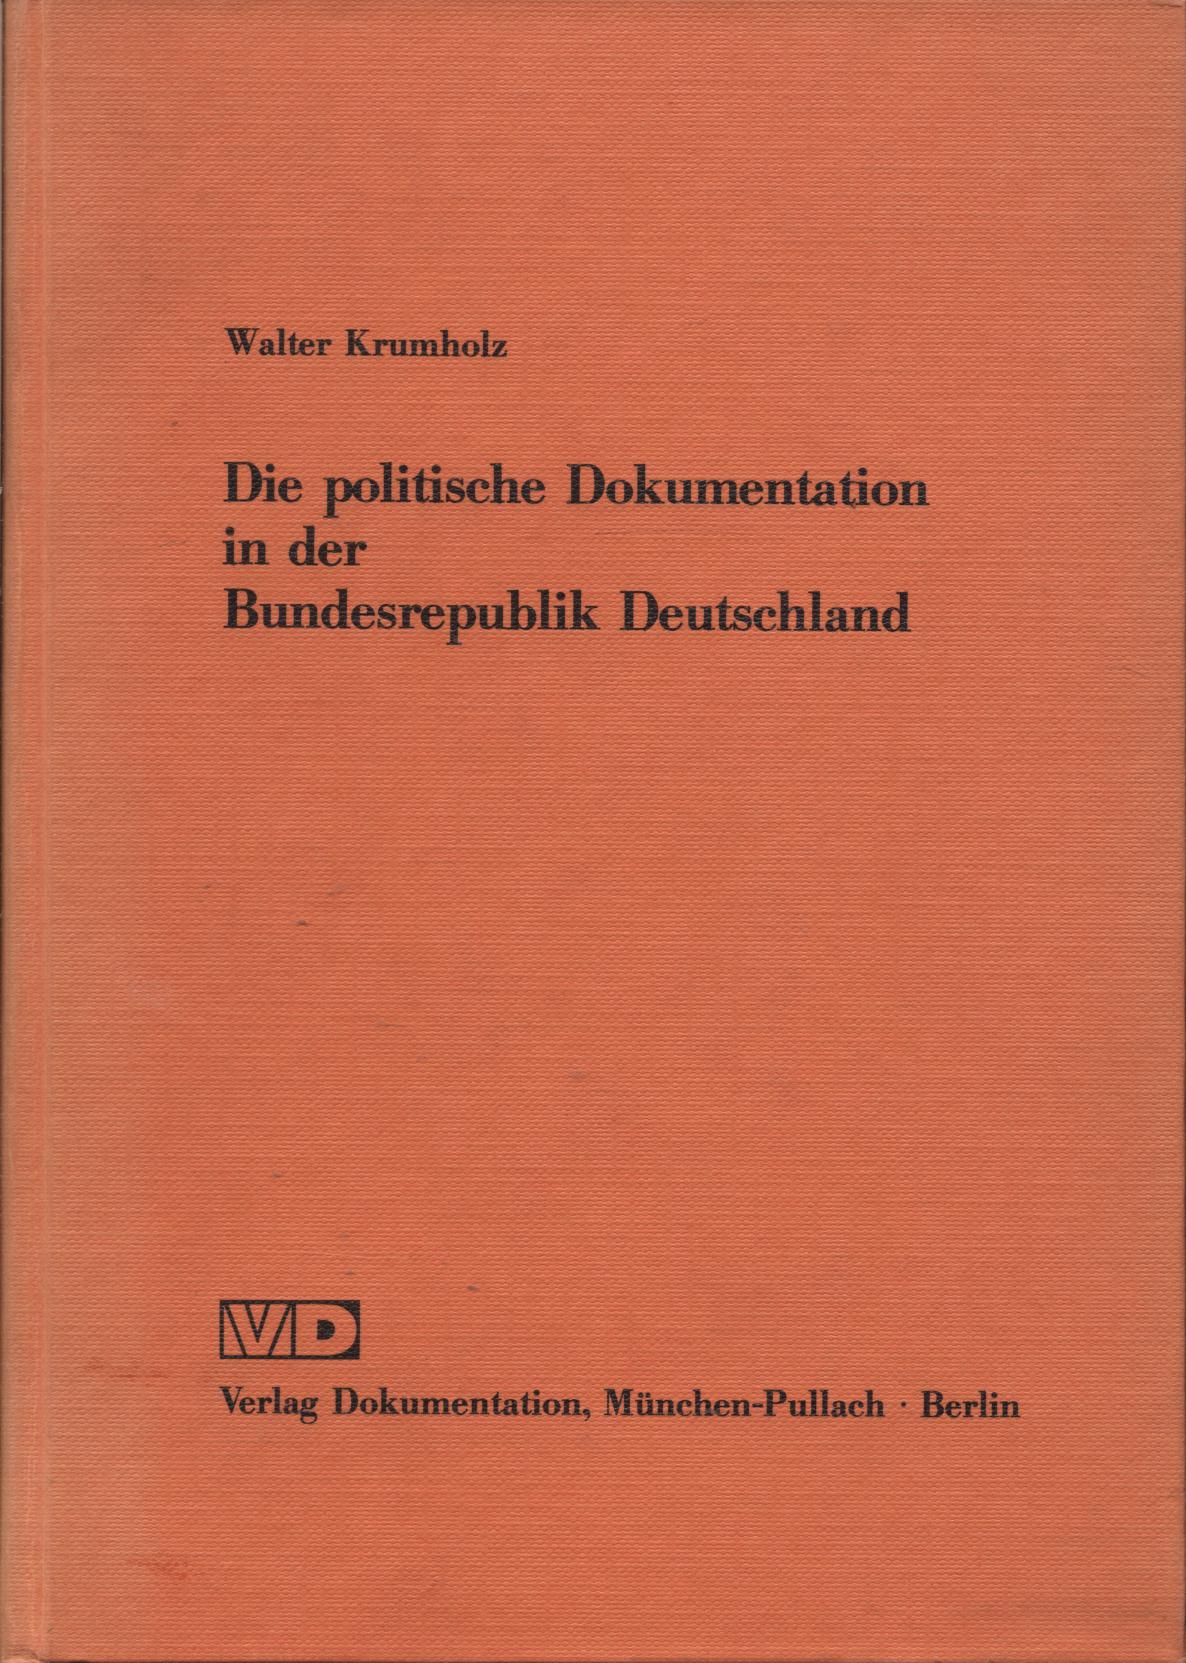 Die politische Dokumentation in der Bundesrepublik Deutschland.  3. erweiterte Auflage - Krumholz, Walter